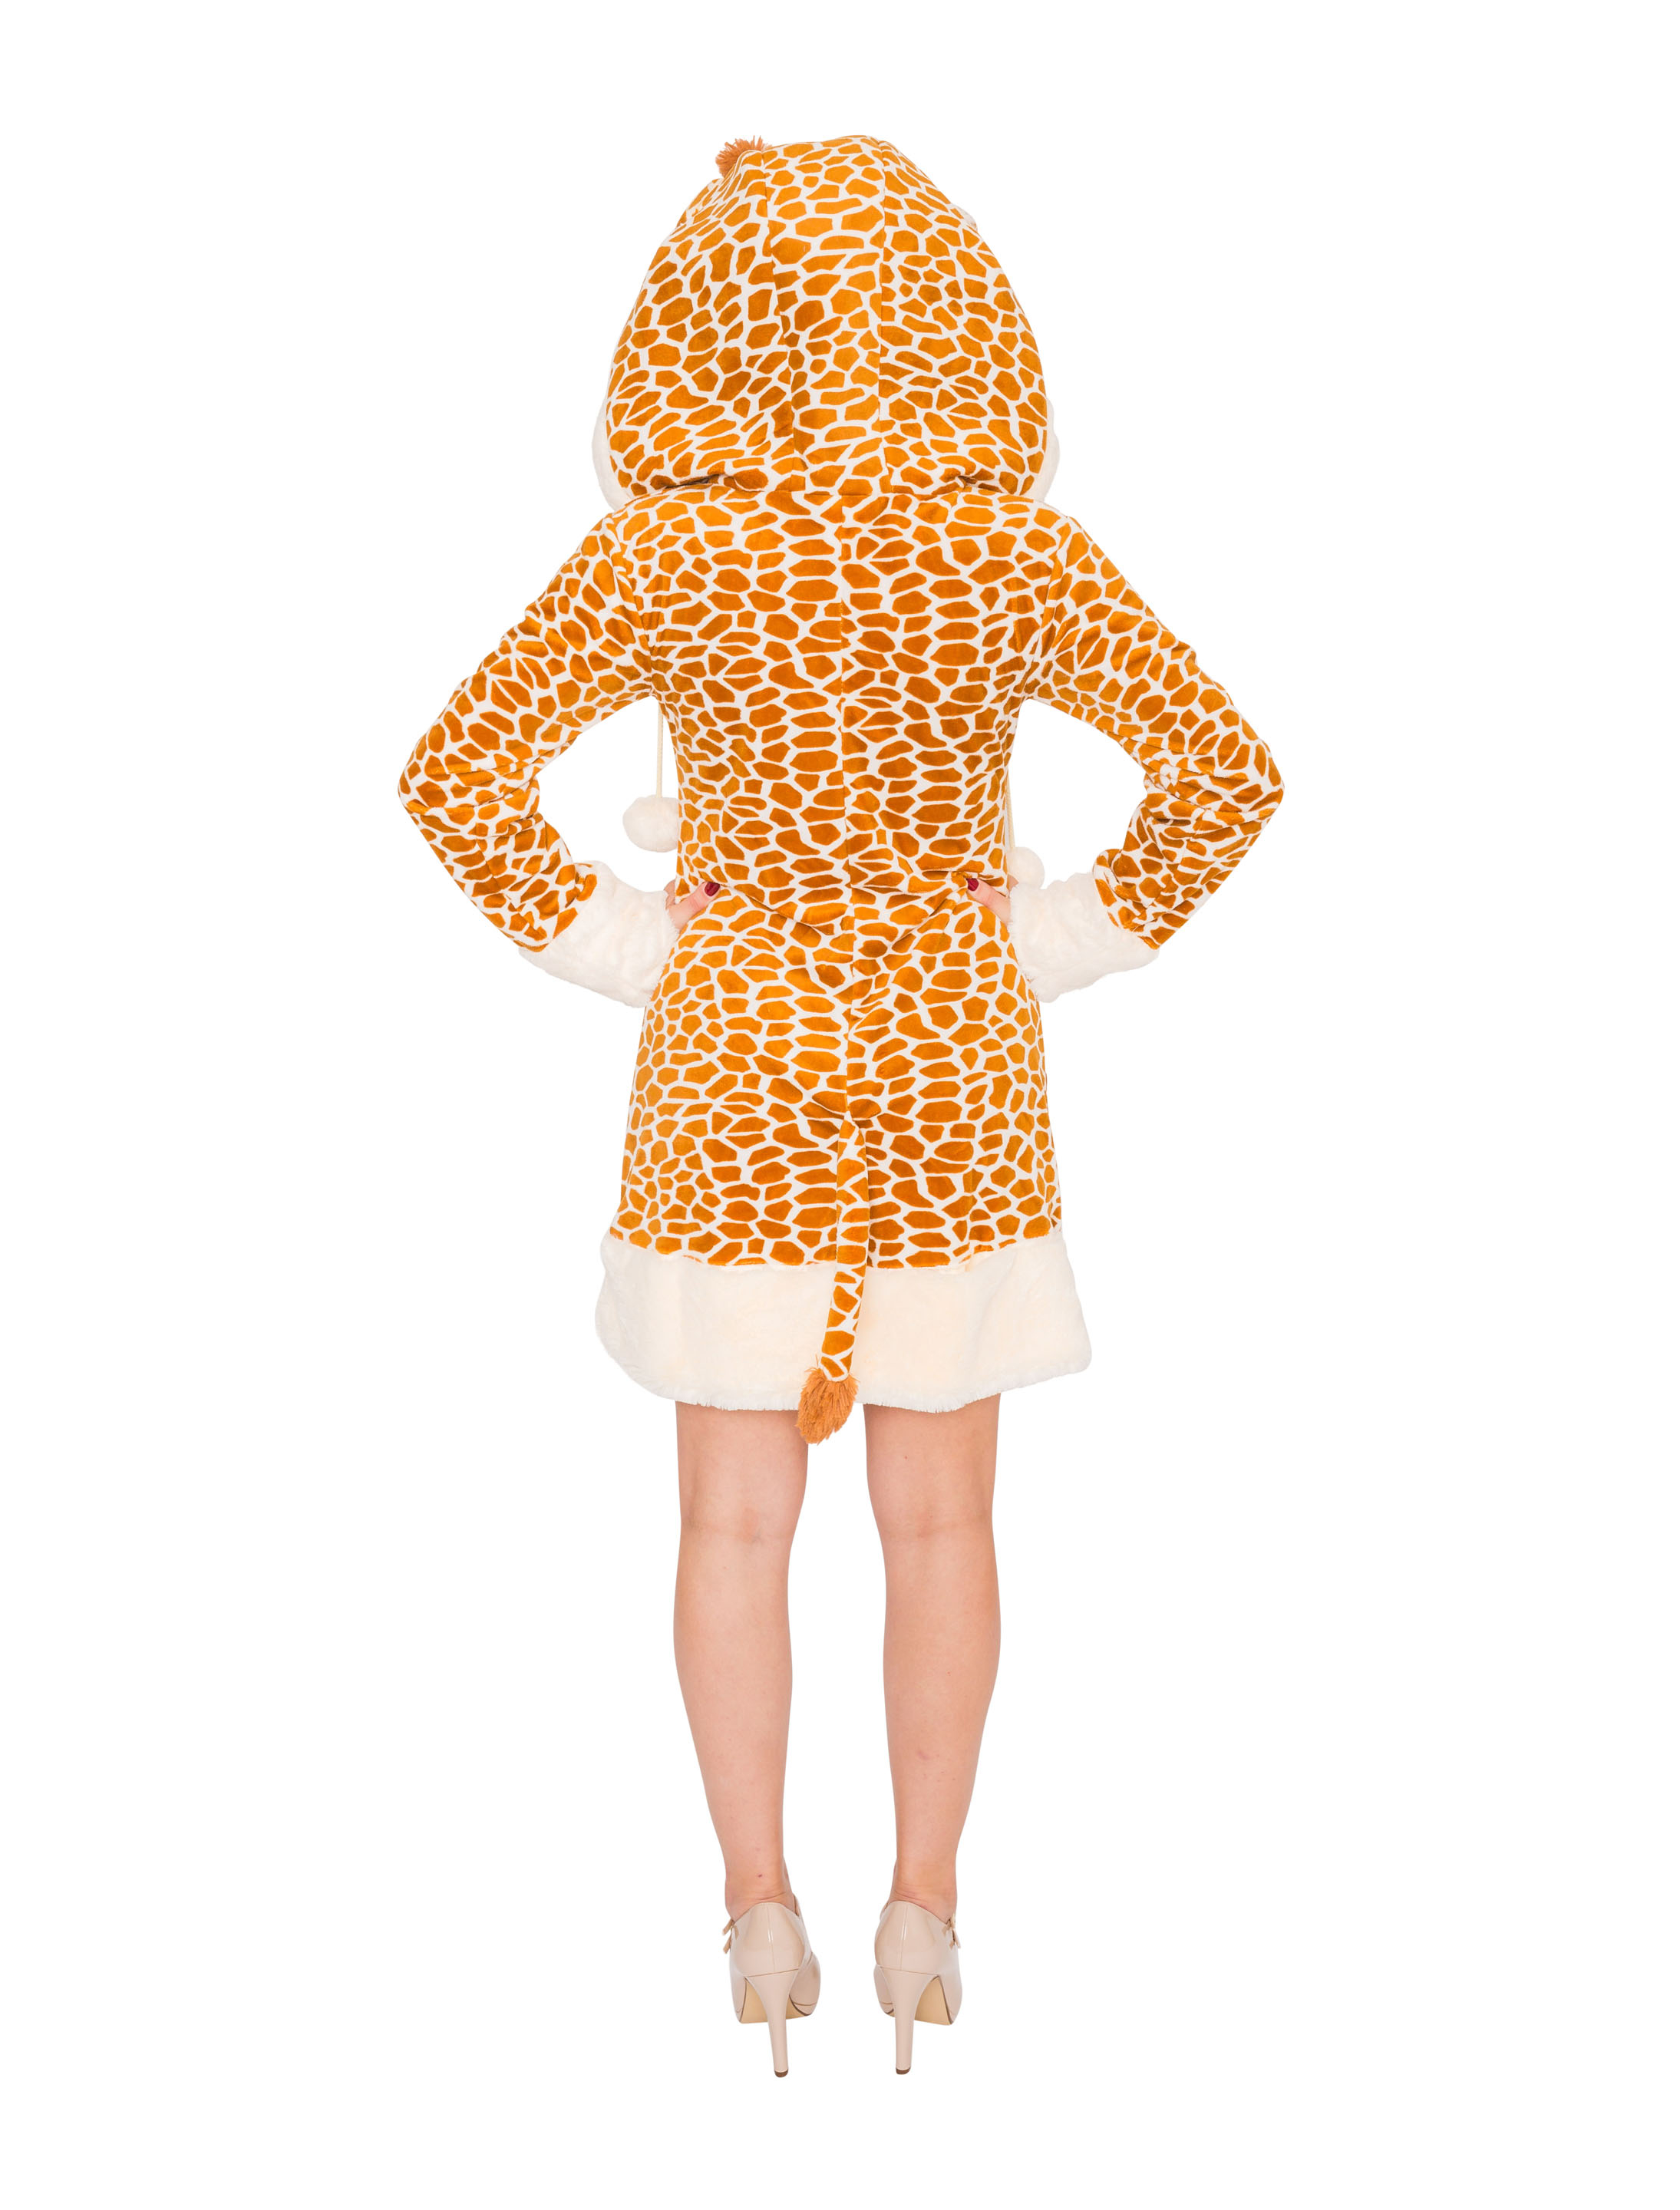 Kleid Plüsch Giraffe Damen braun 46-48